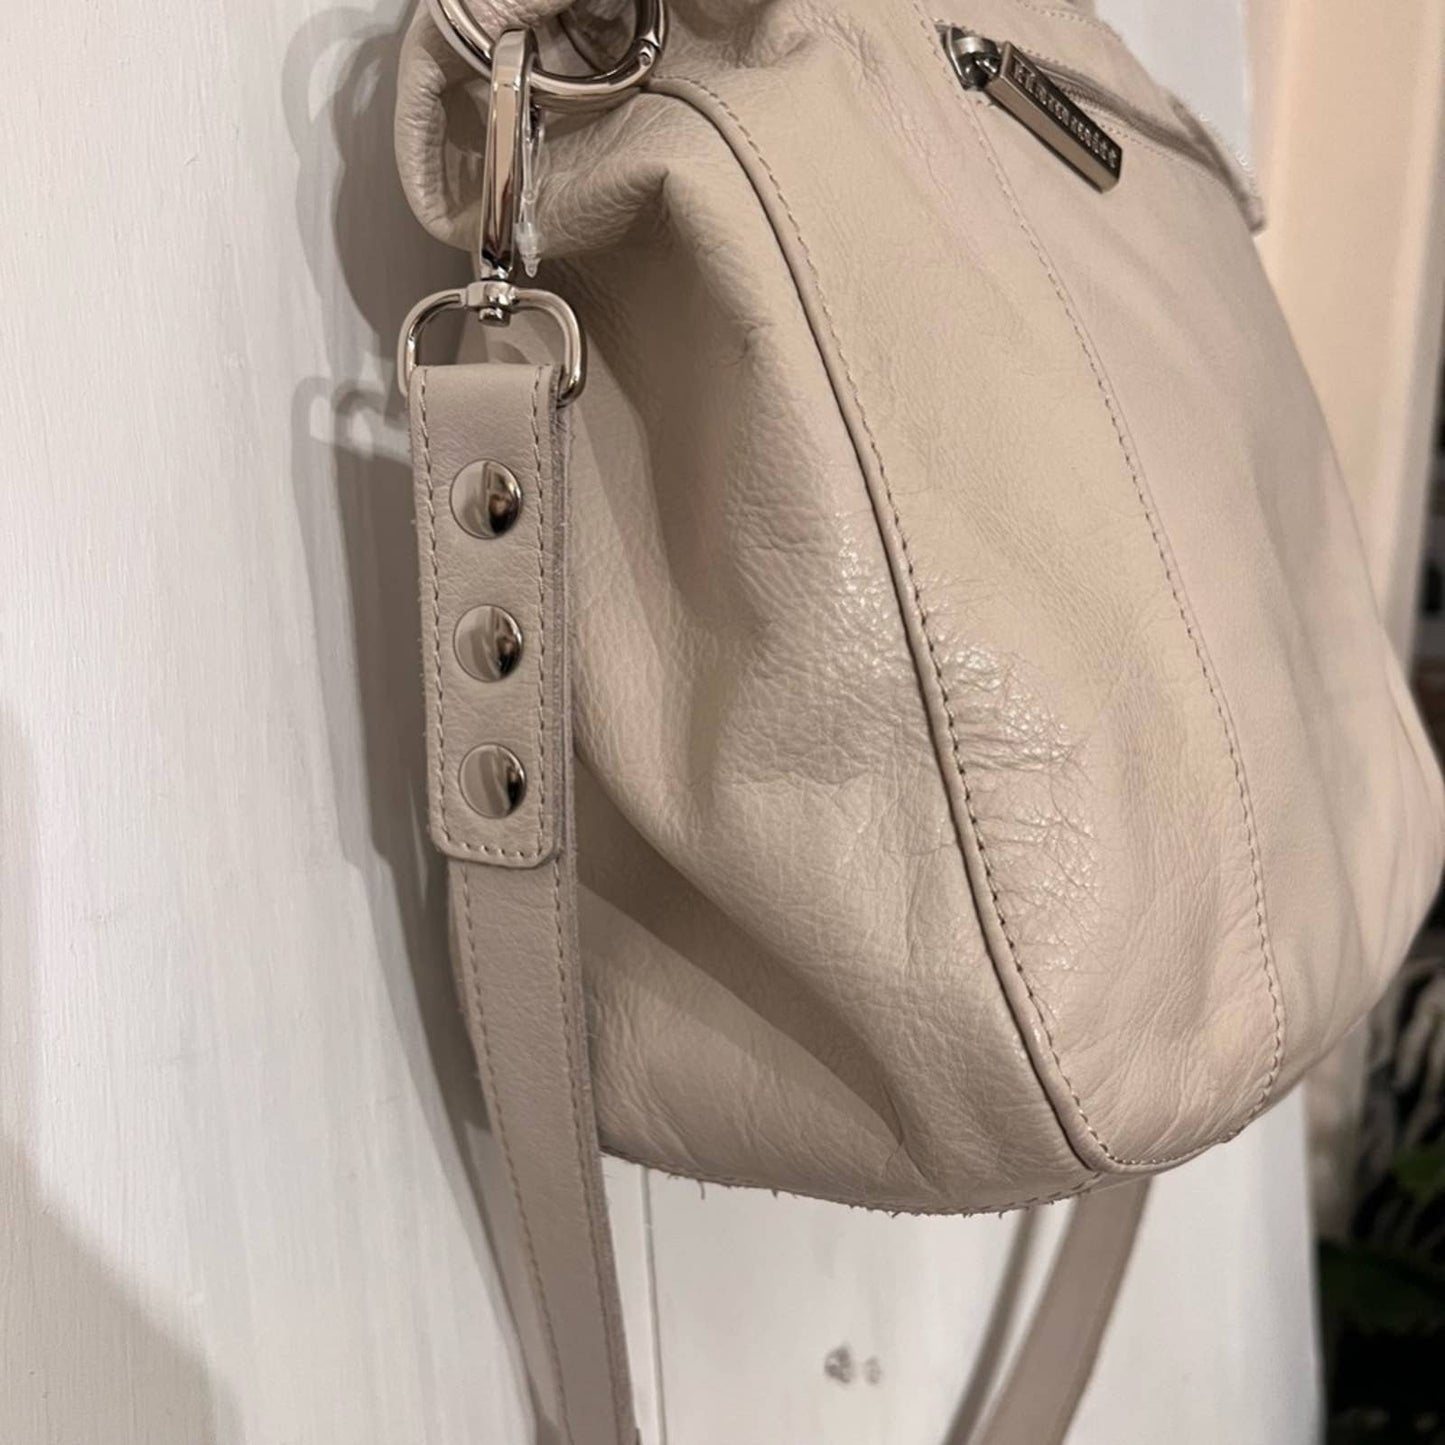 HAMMITT Large Beige Soft Leather& Suede Shoulder Bag